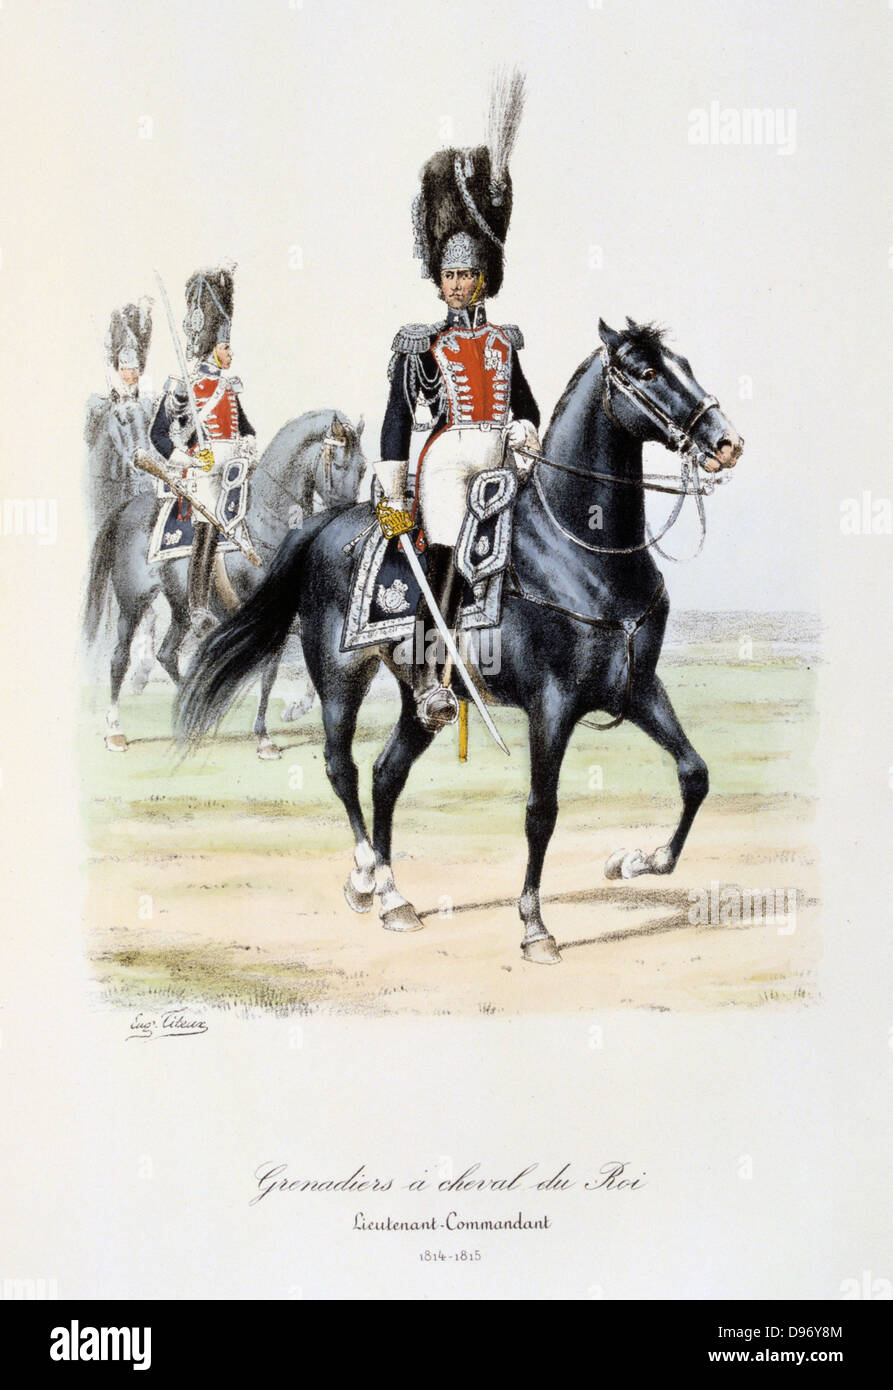 Royal Mounted Grenadier Officer, 1814-1815. From 'Histoire de la maison militaire du Roi de 1814 a 1830' by Eugene Titeux, Paris, 1890. Stock Photo